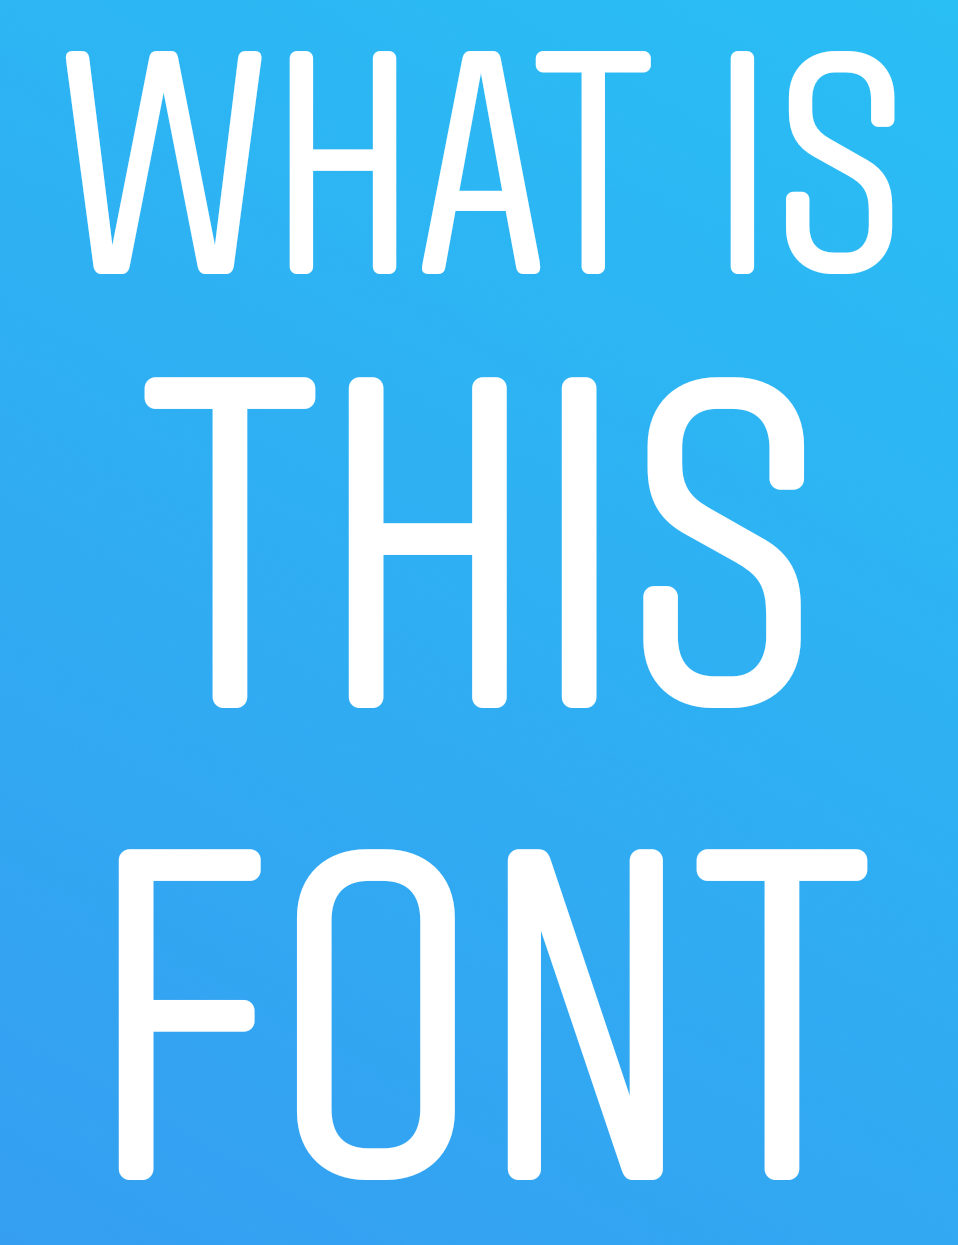 Với sự đa dạng của font chữ, bạn có thể thể hiện phong cách và cá tính của mình một cách dễ dàng hơn bao giờ hết. Cùng truy cập vào trang web của chúng tôi để tải về ngay font mới nhất và cập nhật cho hồ sơ Instagram của bạn!